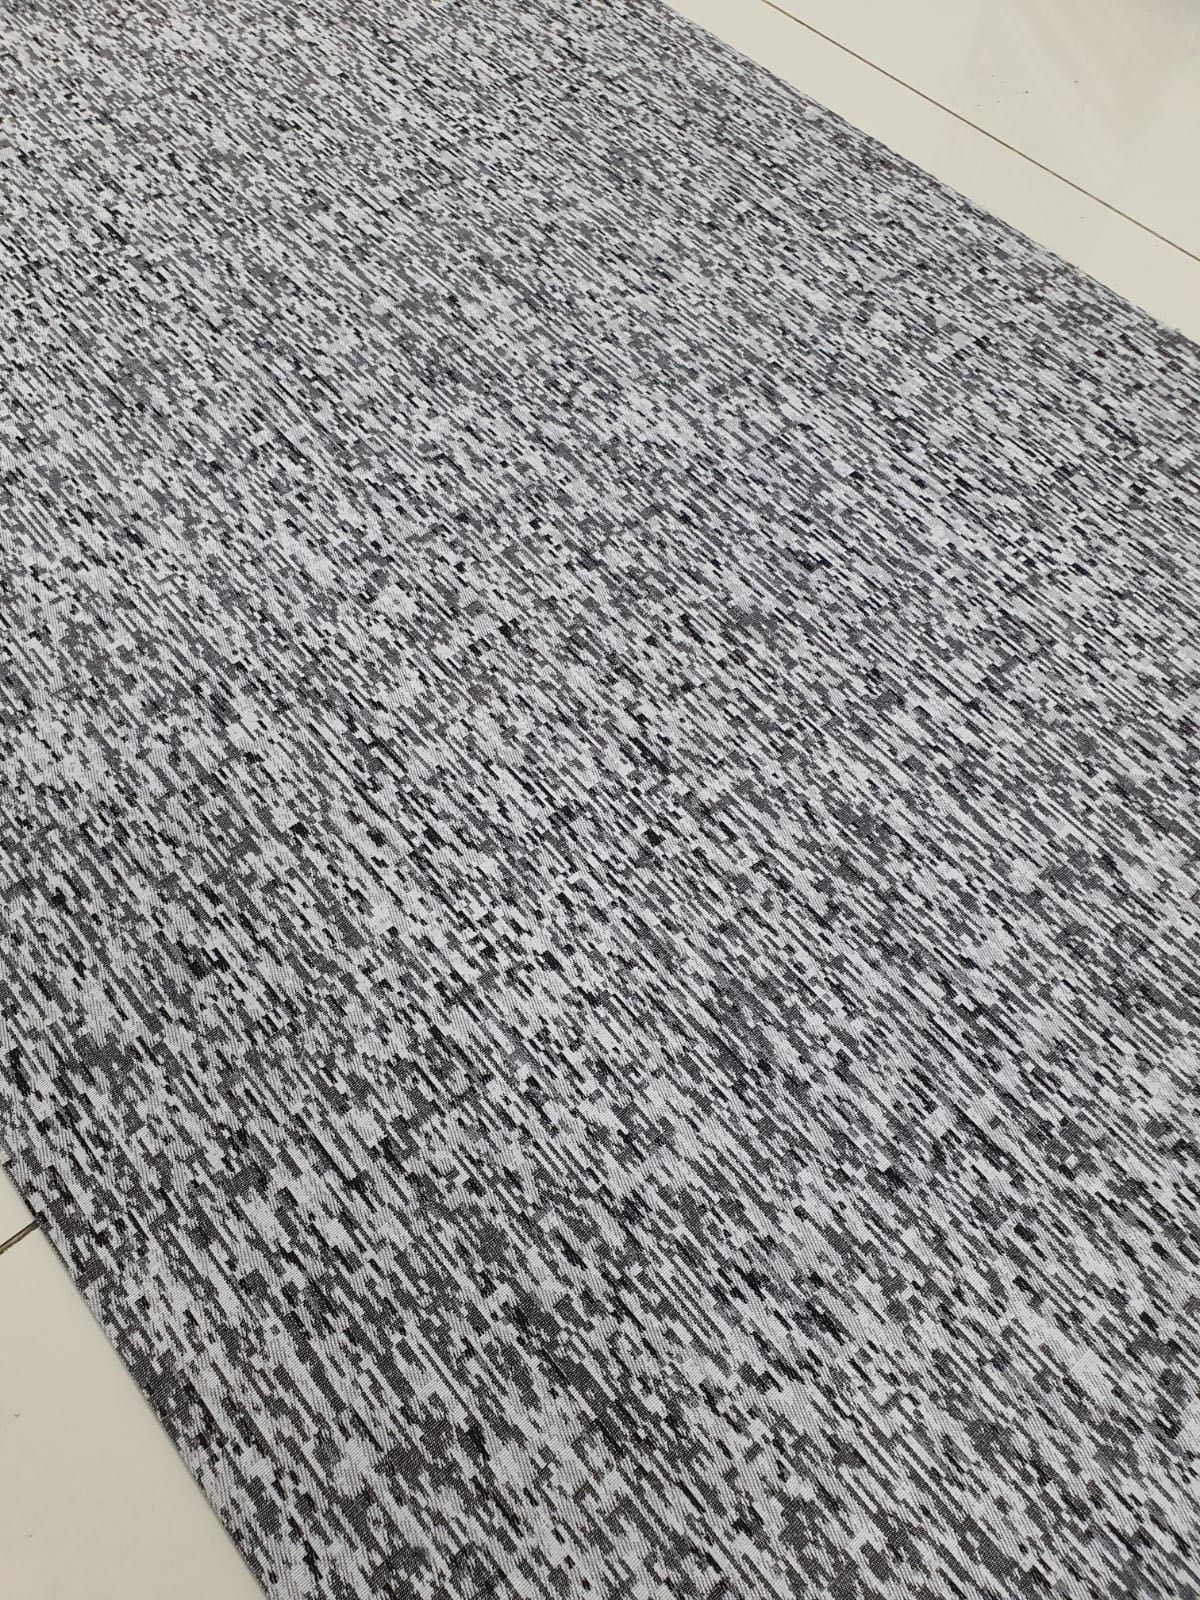 Ковровая дорожка, испанский коврик ковер ширина 75 см метражом